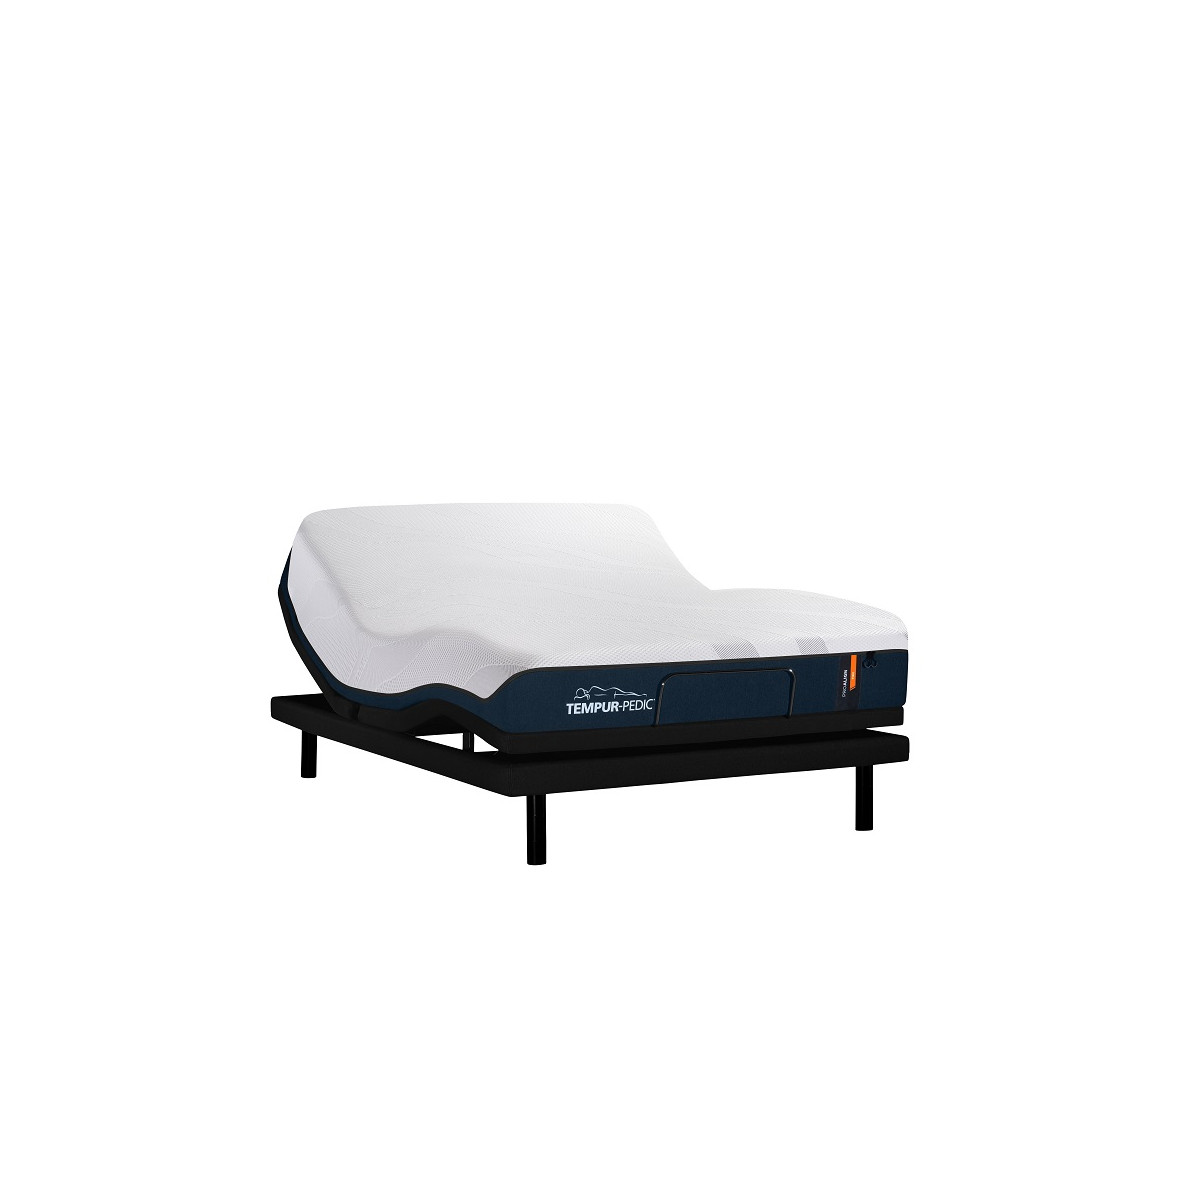 Tempur-pedic proalign firm mattress